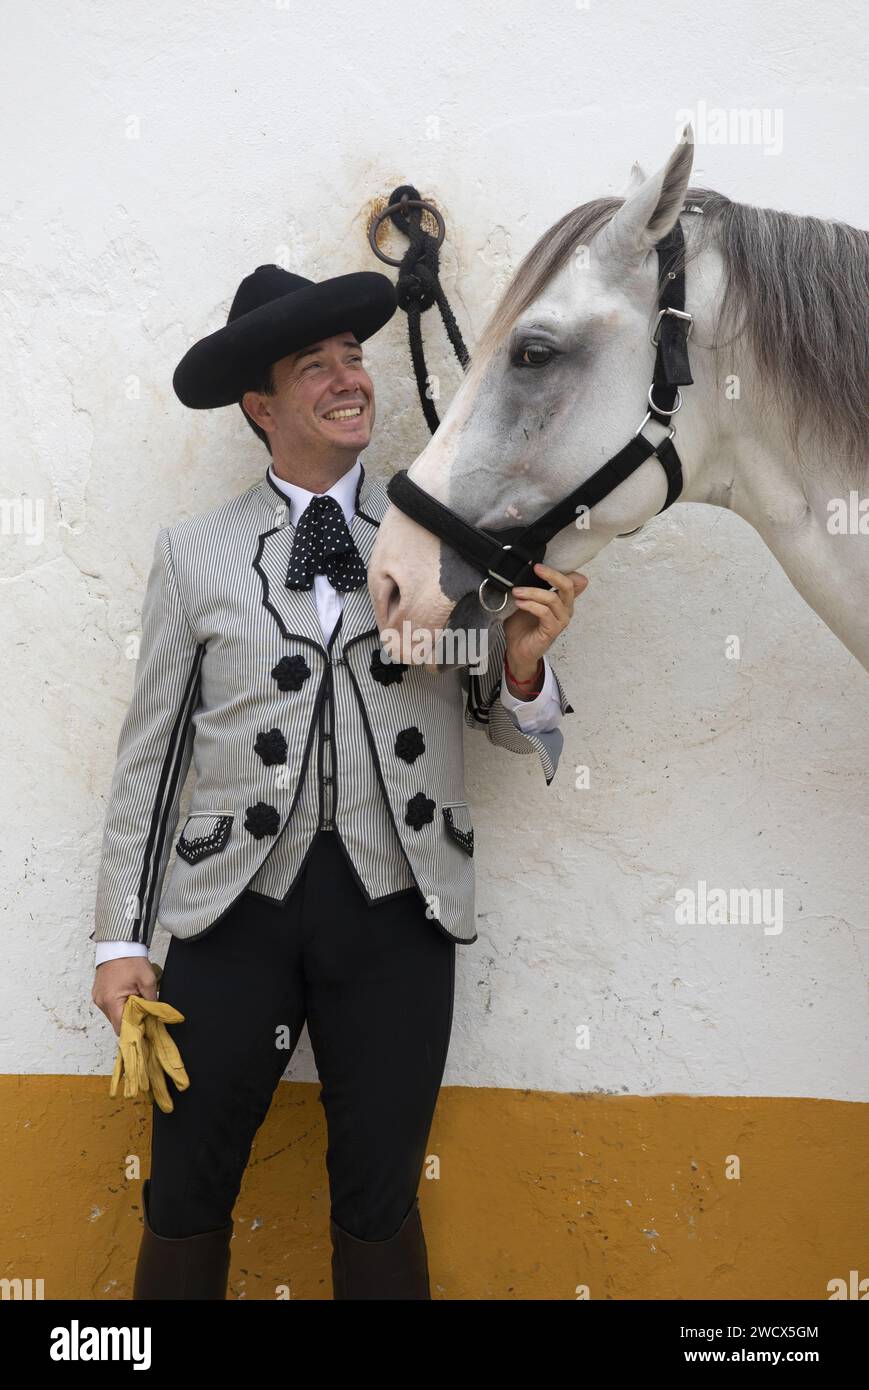 España, Andalucía, Jerez de la Frontera, Real escuela andaluza de arte ecuestre, jinete con disfraz de Goyesco junto a un caballo blanco Foto de stock